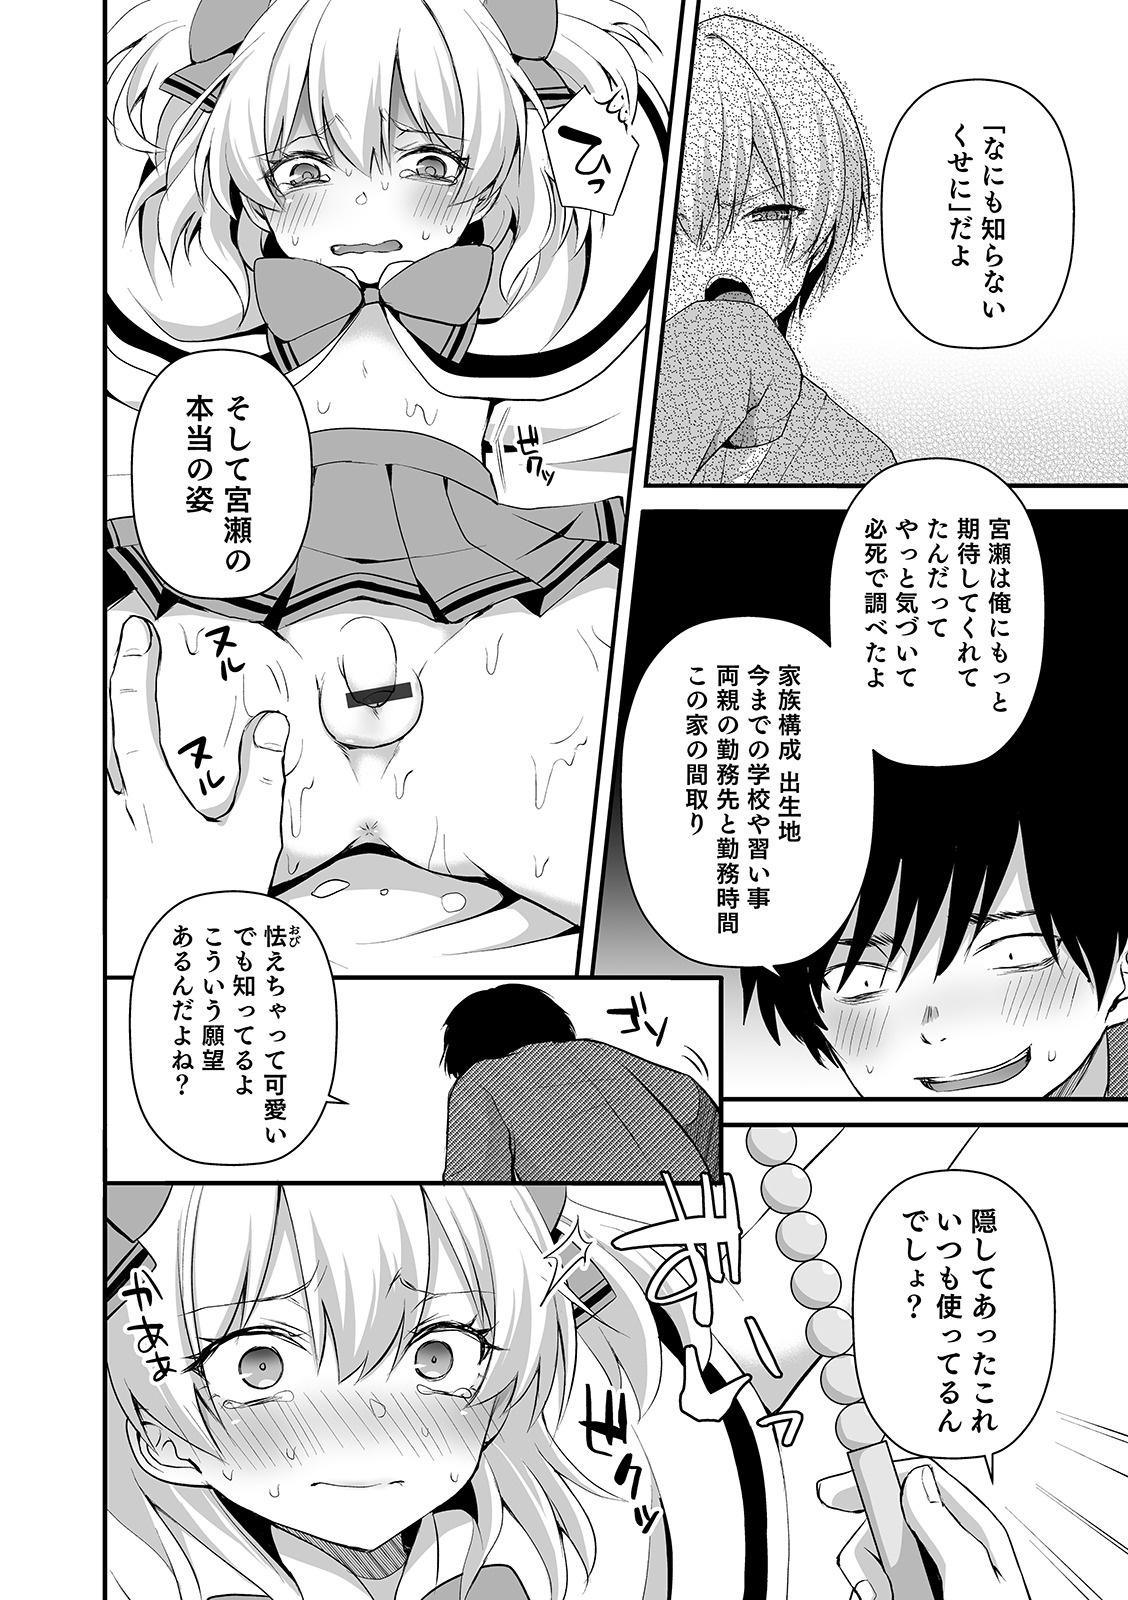 Licking Pussy Otokonoko Heaven's Door 10 Cut - Page 8